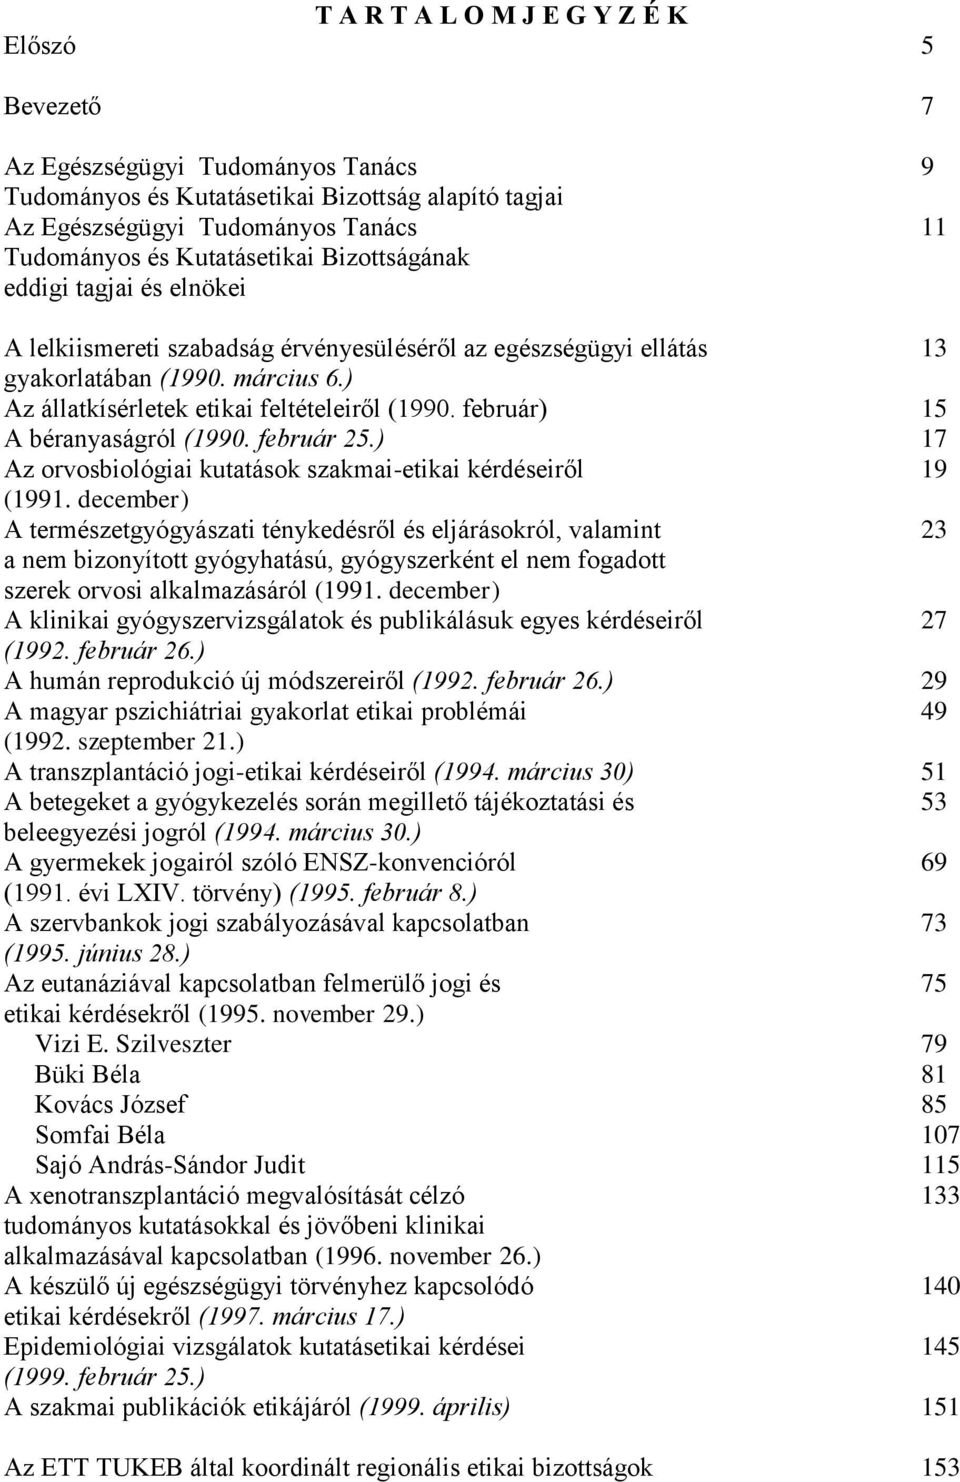 ) Az állatkísérletek etikai feltételeiről (1990. február) 15 A béranyaságról (1990. február 25.) 17 Az orvosbiológiai kutatások szakmai-etikai kérdéseiről 19 (1991.